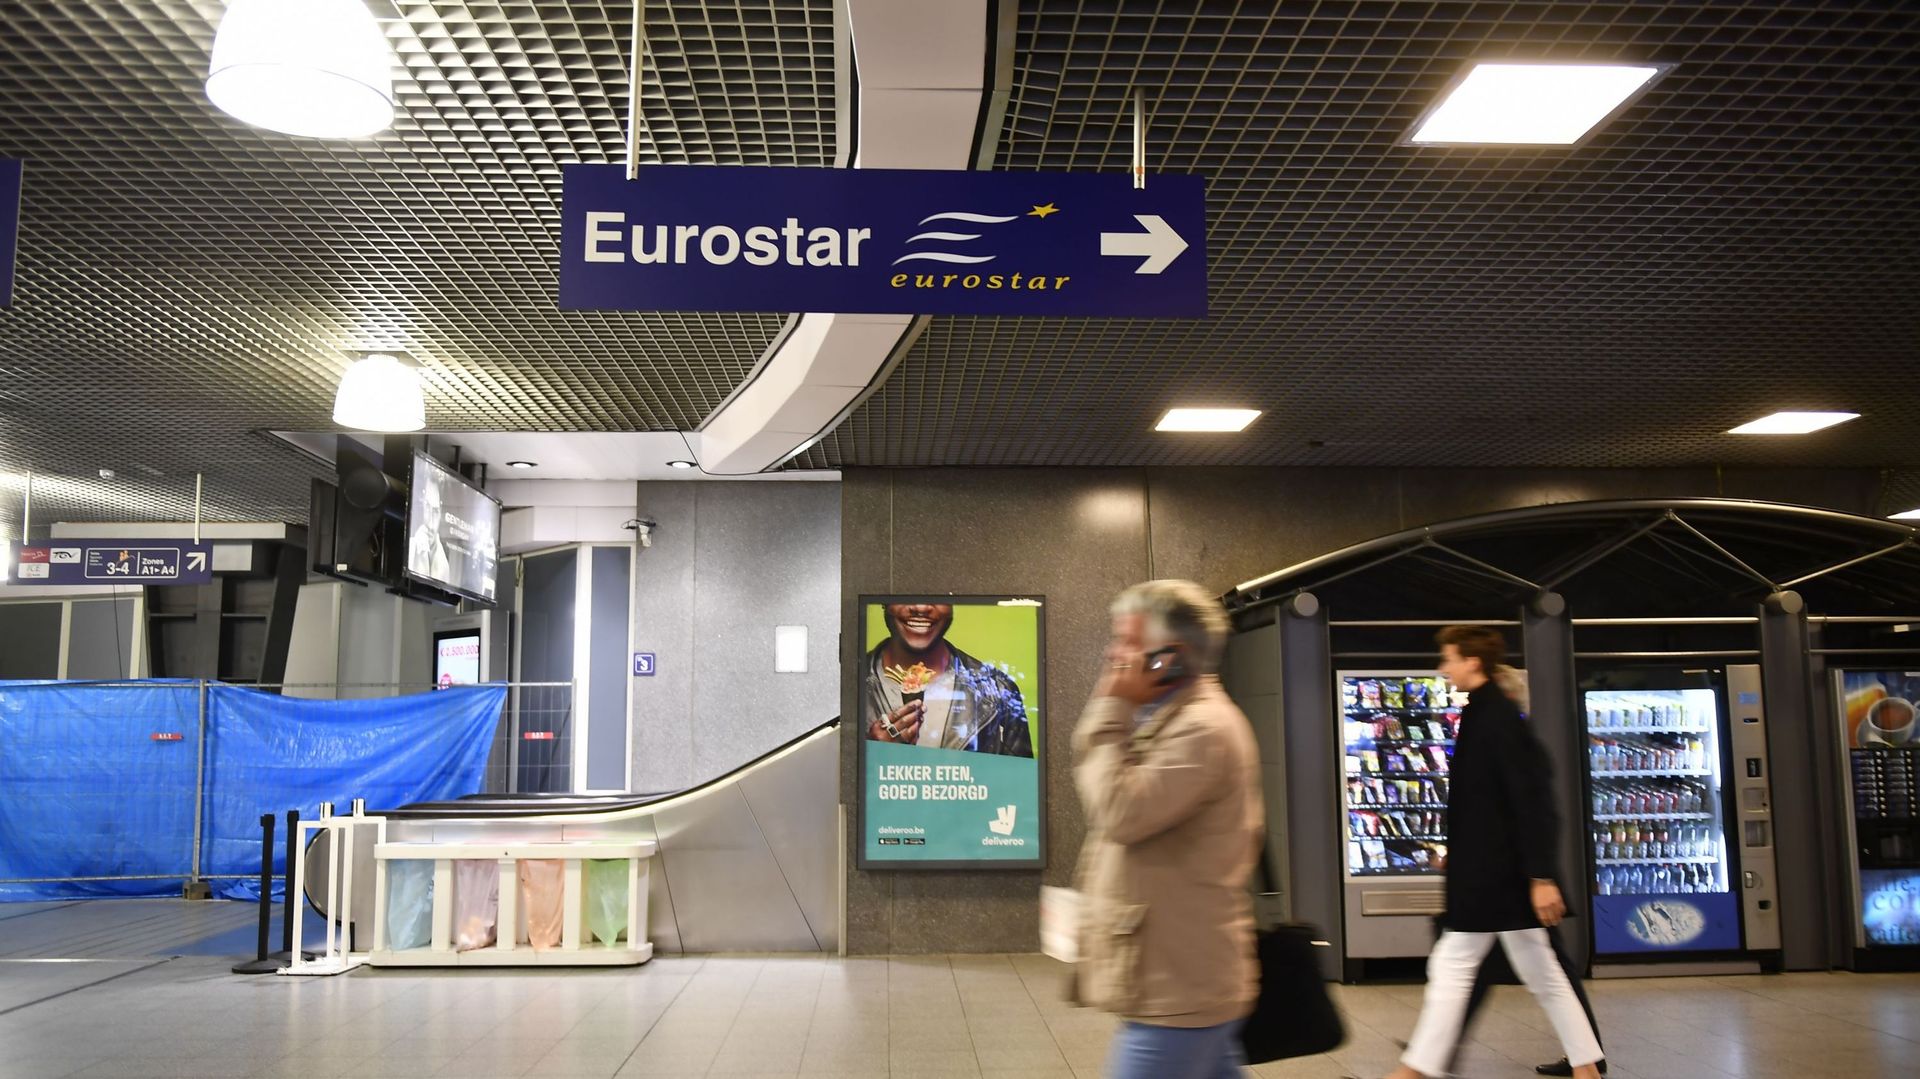 Le premier Eurostar reliant Londres à Amsterdam s'élancera le 4 avril prochain